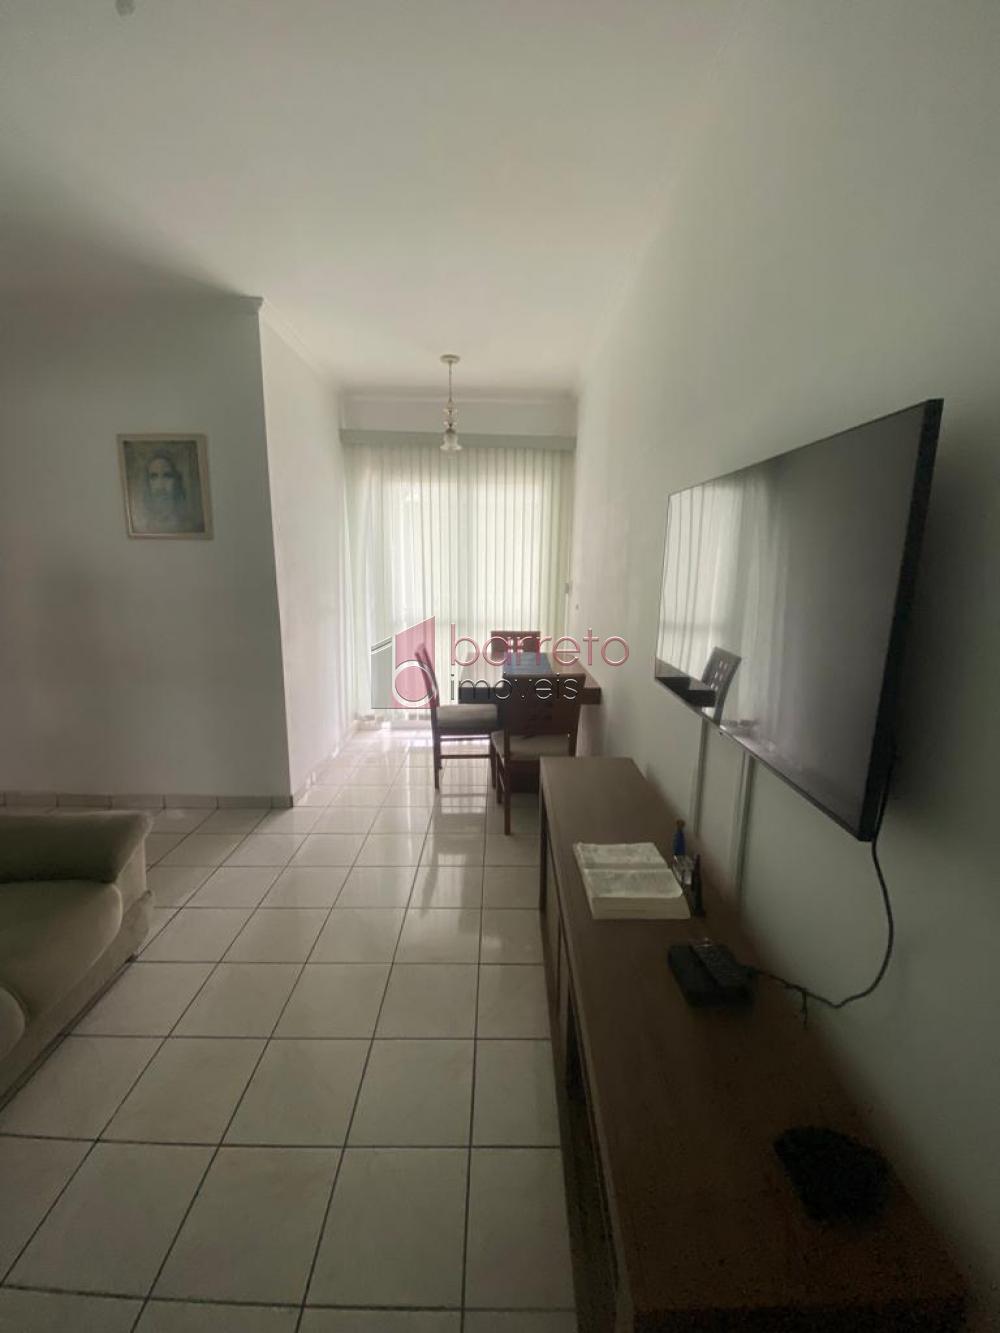 Comprar Apartamento / Padrão em Jundiaí R$ 276.600,00 - Foto 2